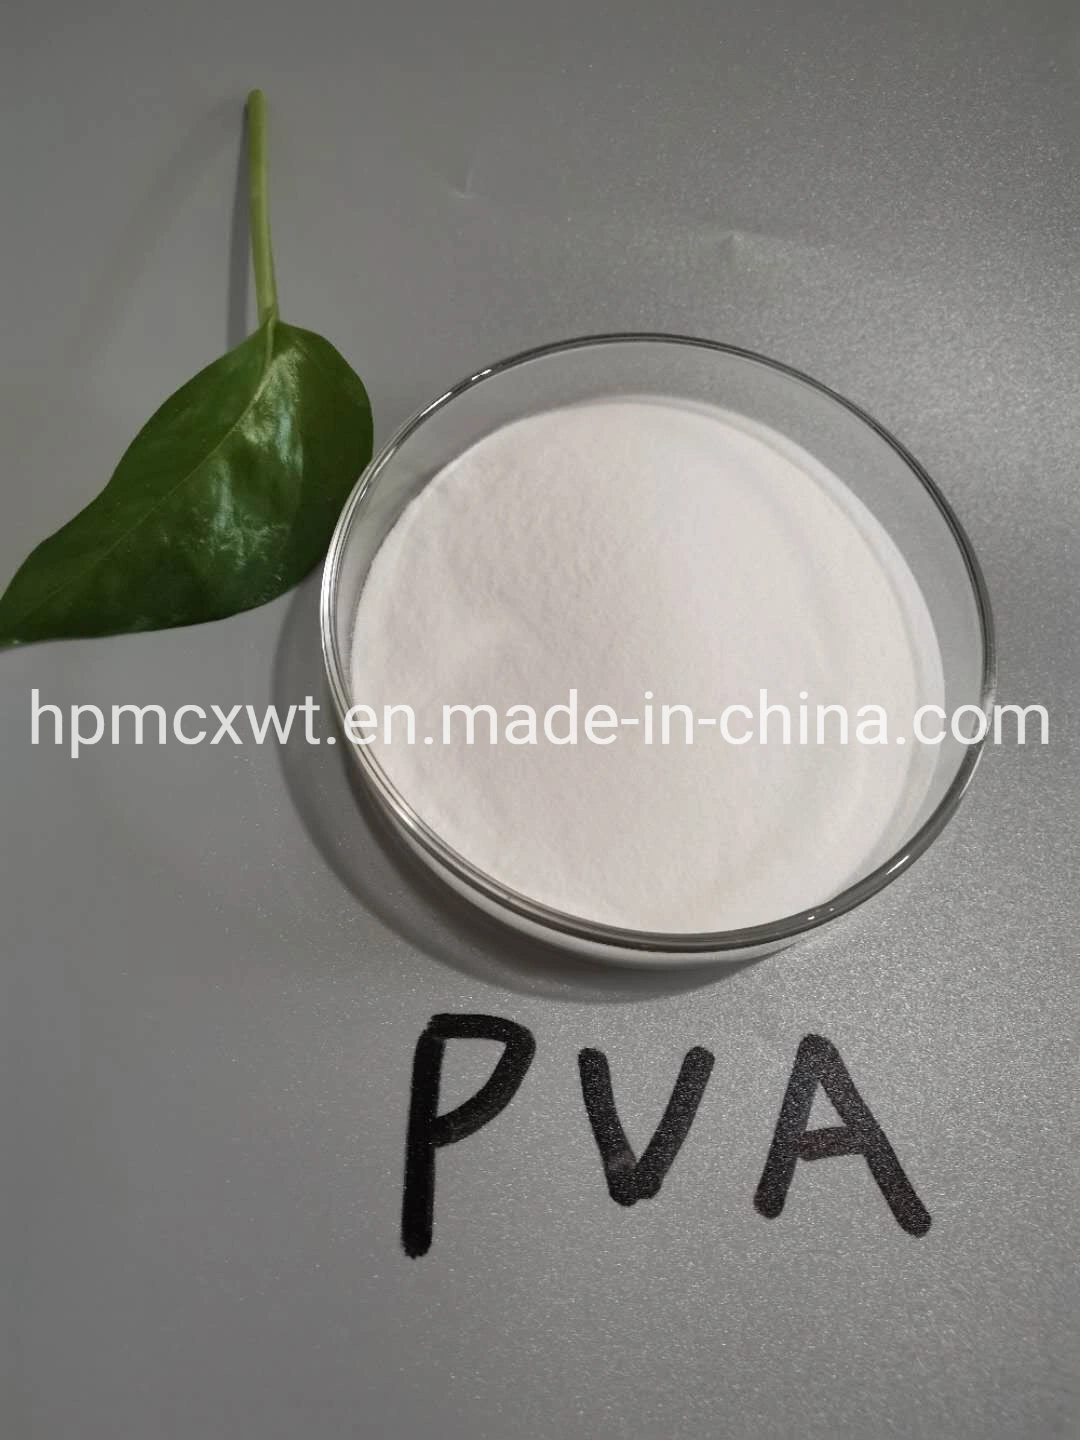 Лучшее качество PVA экологичные полимера спирт 1799 для принятия решений пленки